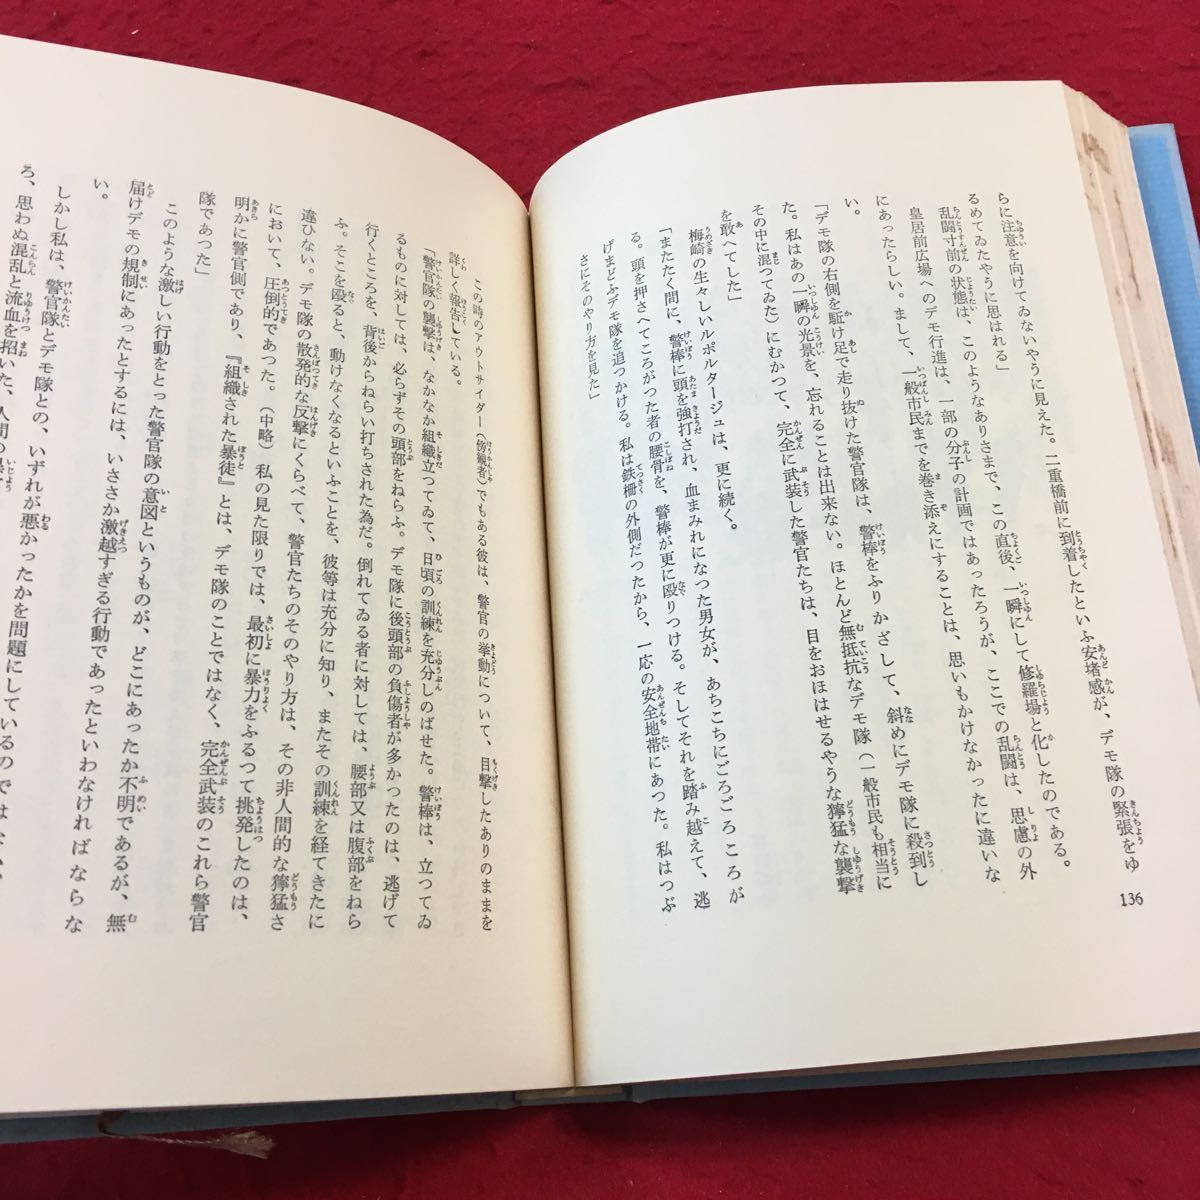 YW-043 человек переворот Ikeda Daisaku no. шесть шт с коробкой .. газета фирма Showa 46 год выпуск 7 100 год праздник .. более .. суша 